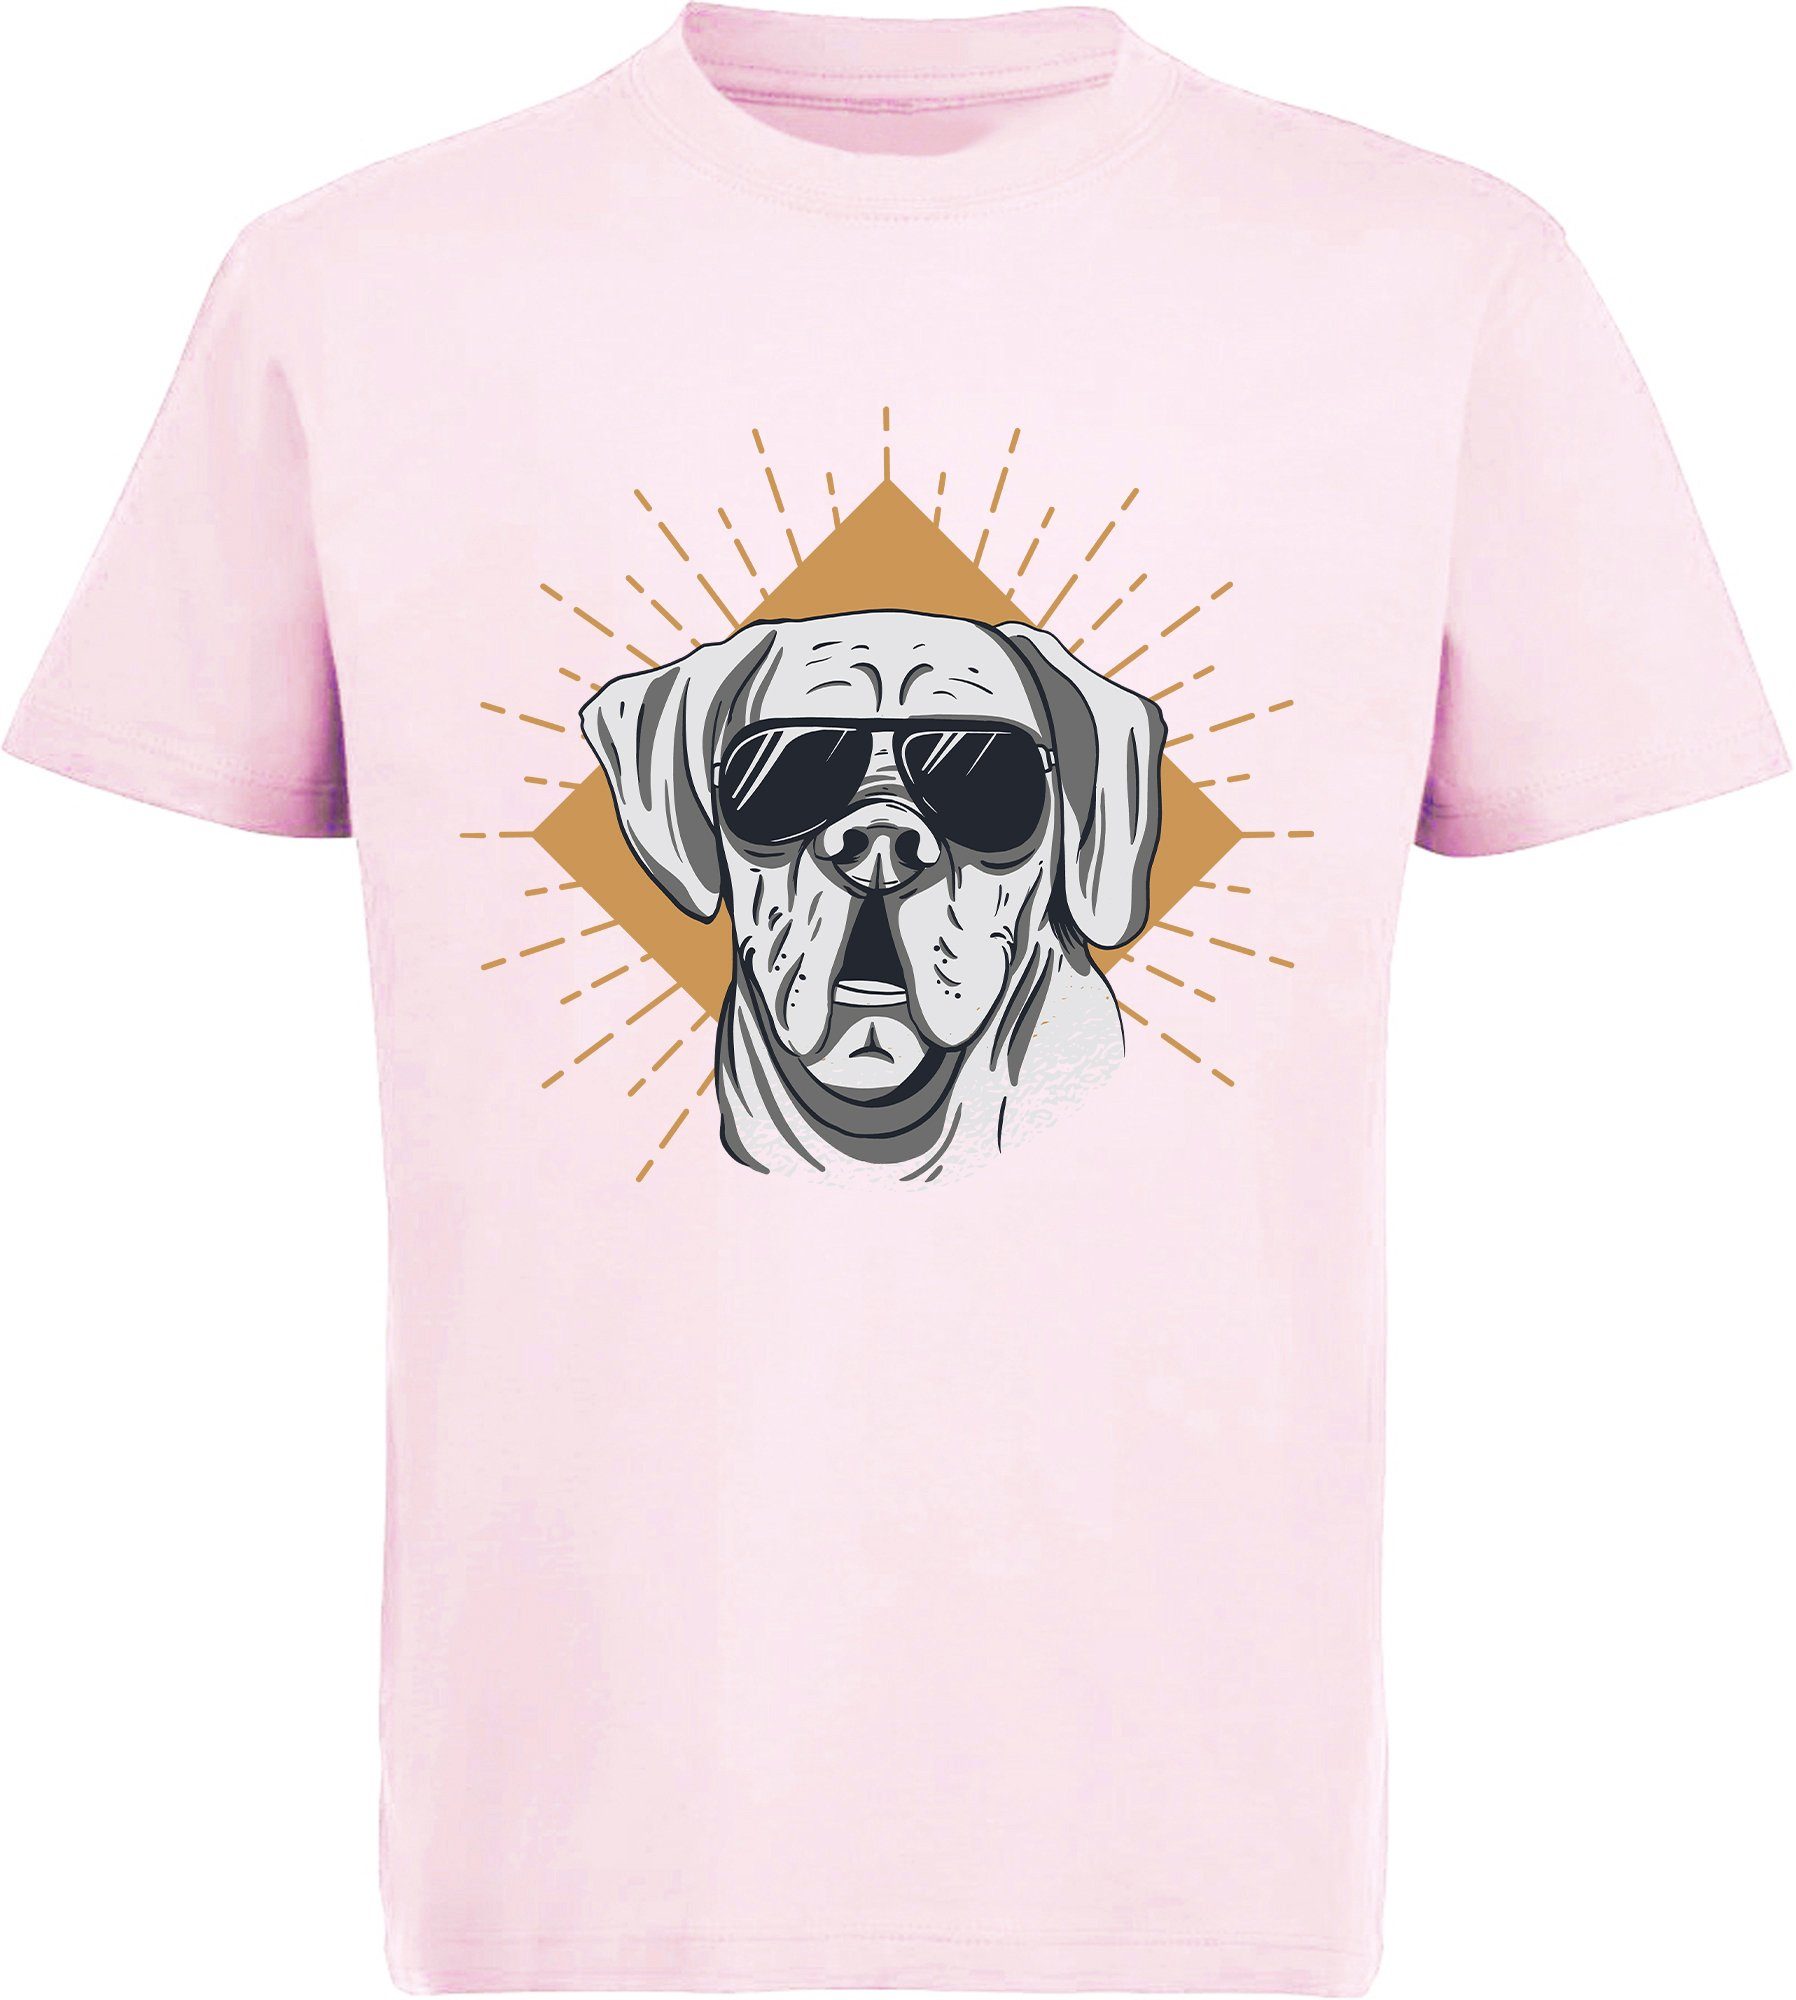 MyDesign24 Print-Shirt bedrucktes Kinder Hunde T-Shirt - Cooler Hund mit Sonnenbrille Baumwollshirt mit Aufdruck, i224 rosa